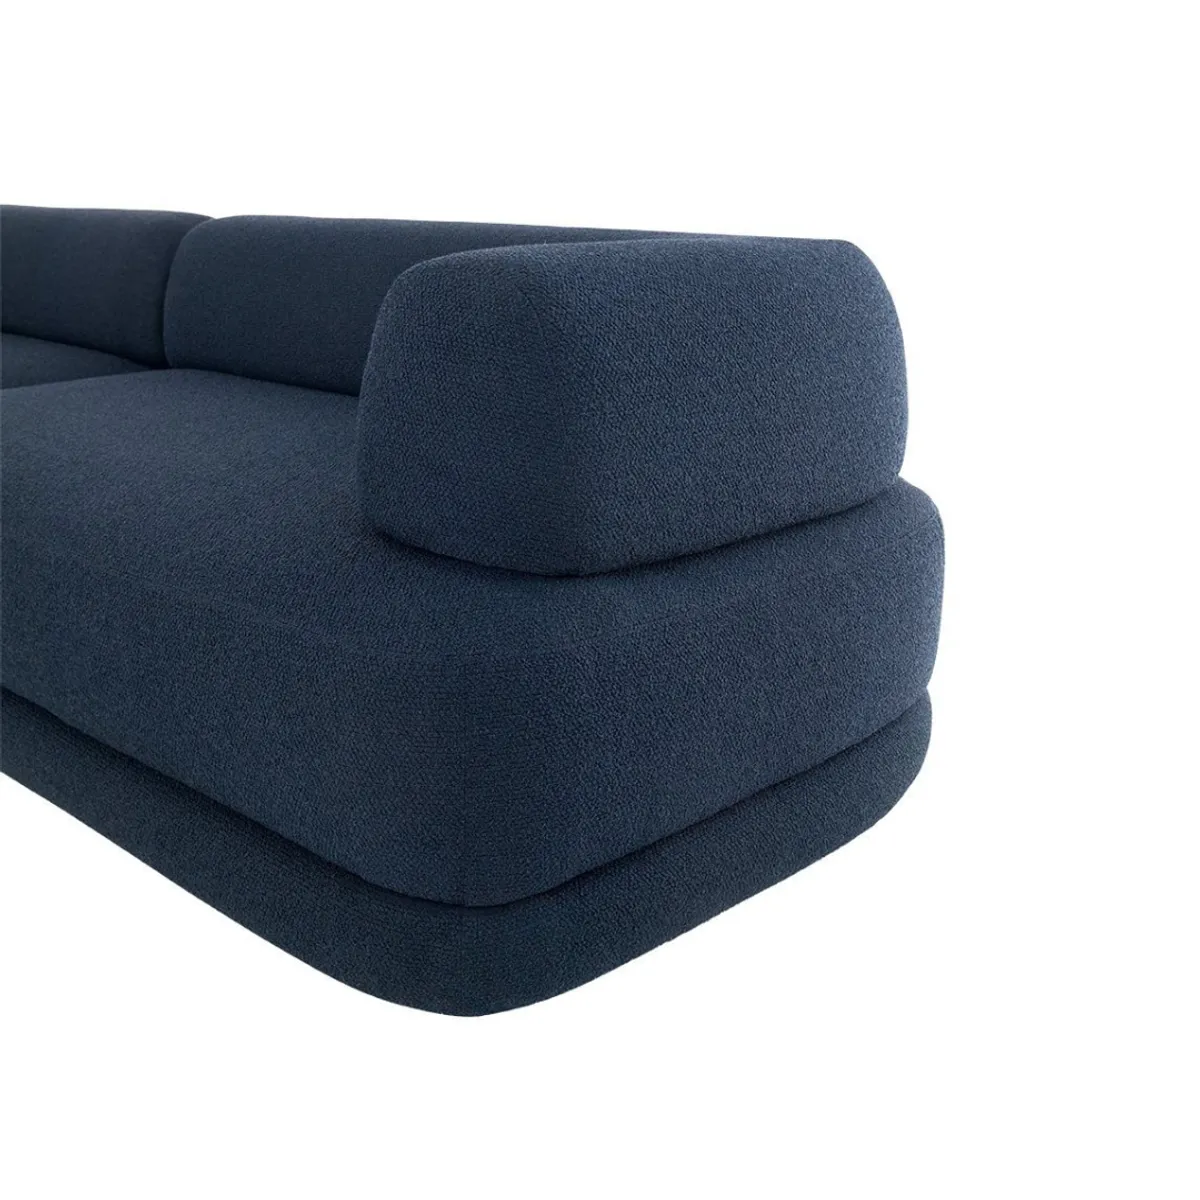 Putellas sofa 4